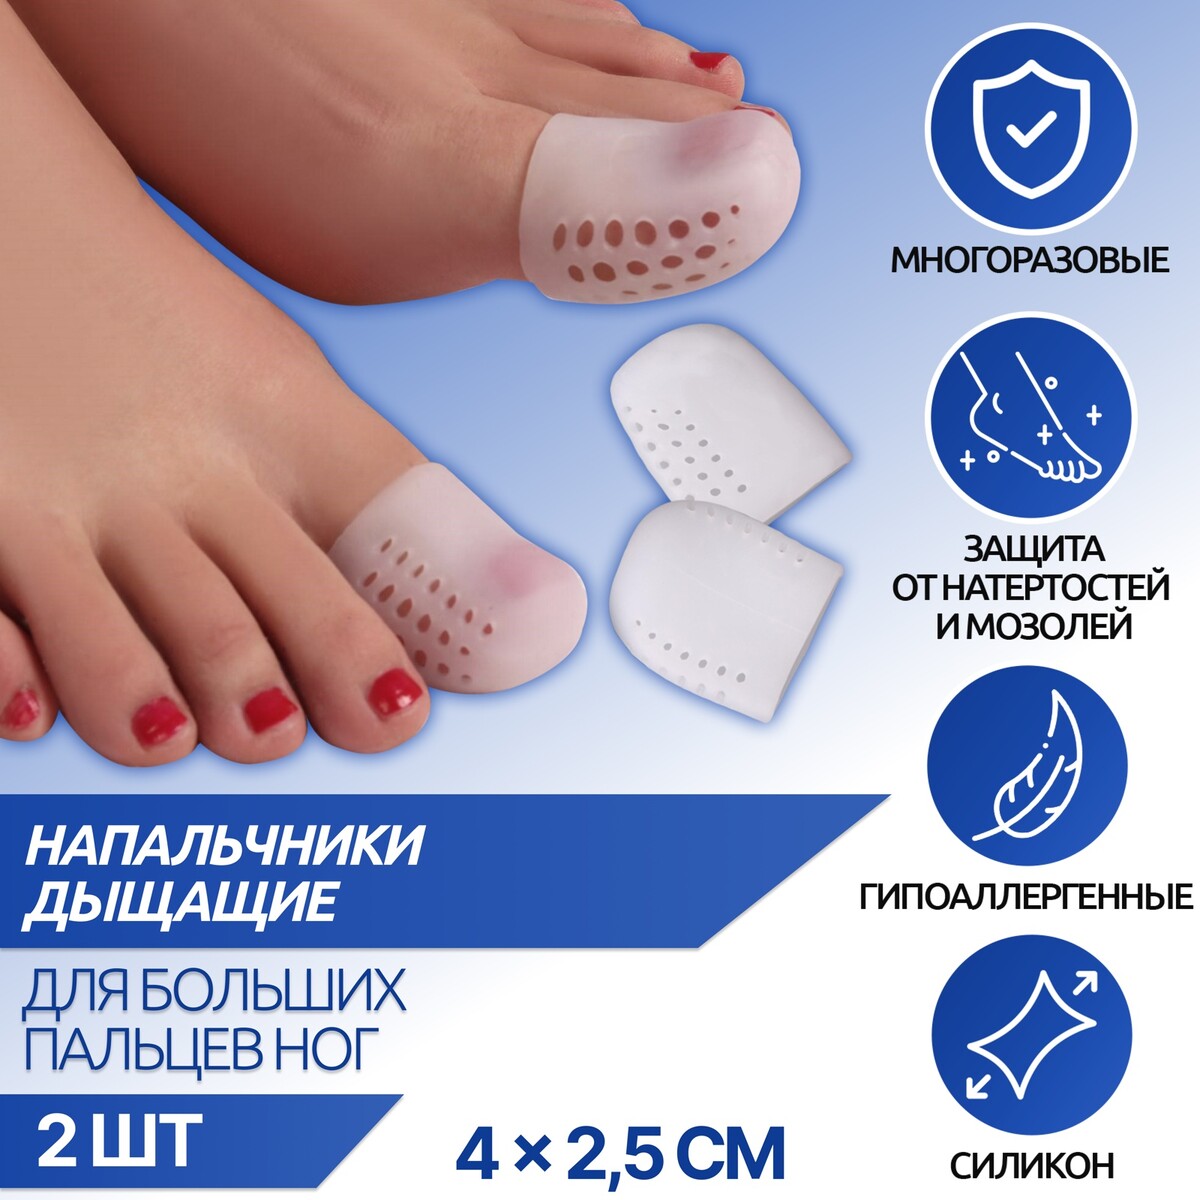 Напальчники для больших пальцев ног, дышащий, силиконовые, 4 × 2,5 см, пара, цвет белый лиана сухая венок 8 см белый